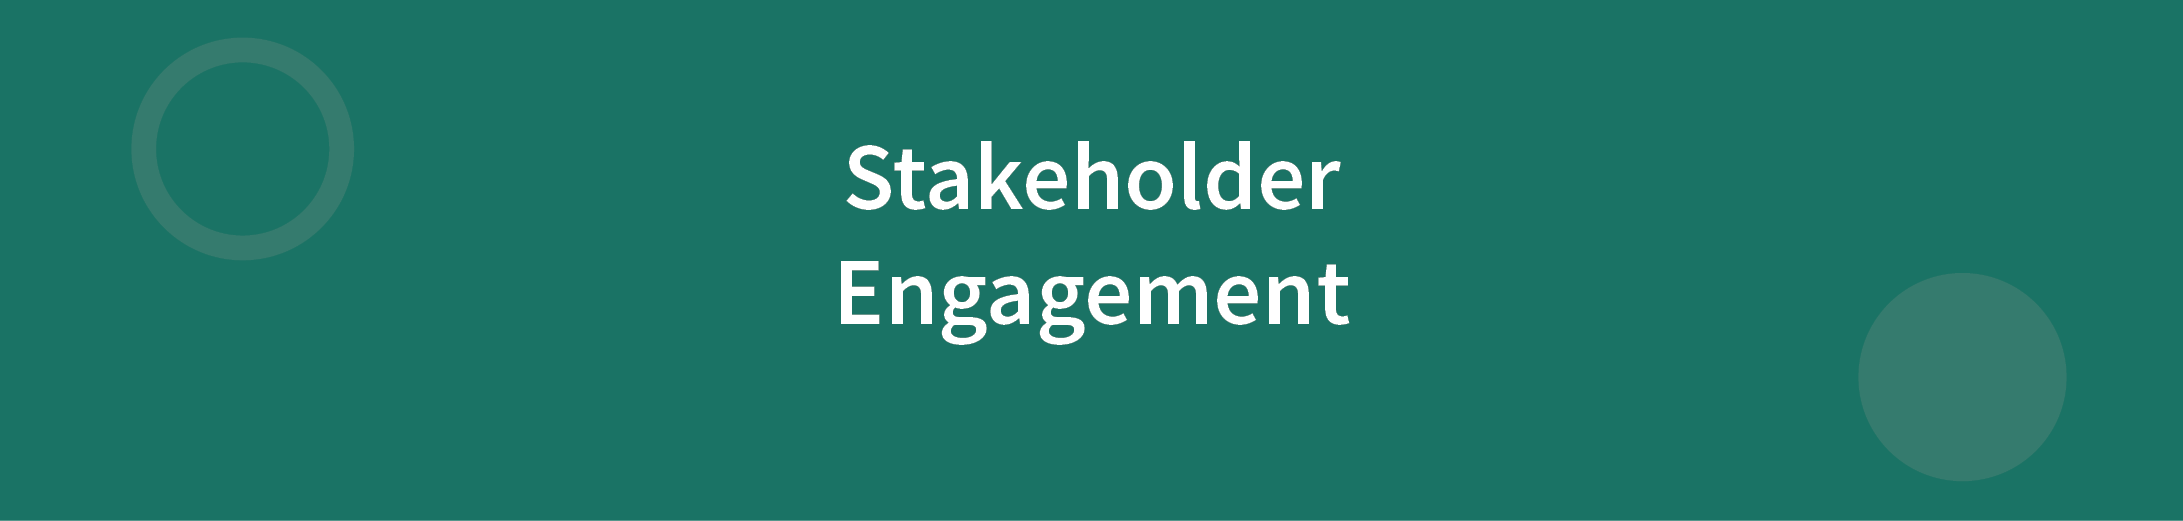 Stakeholder Engagement Framework written in white text on dark green background